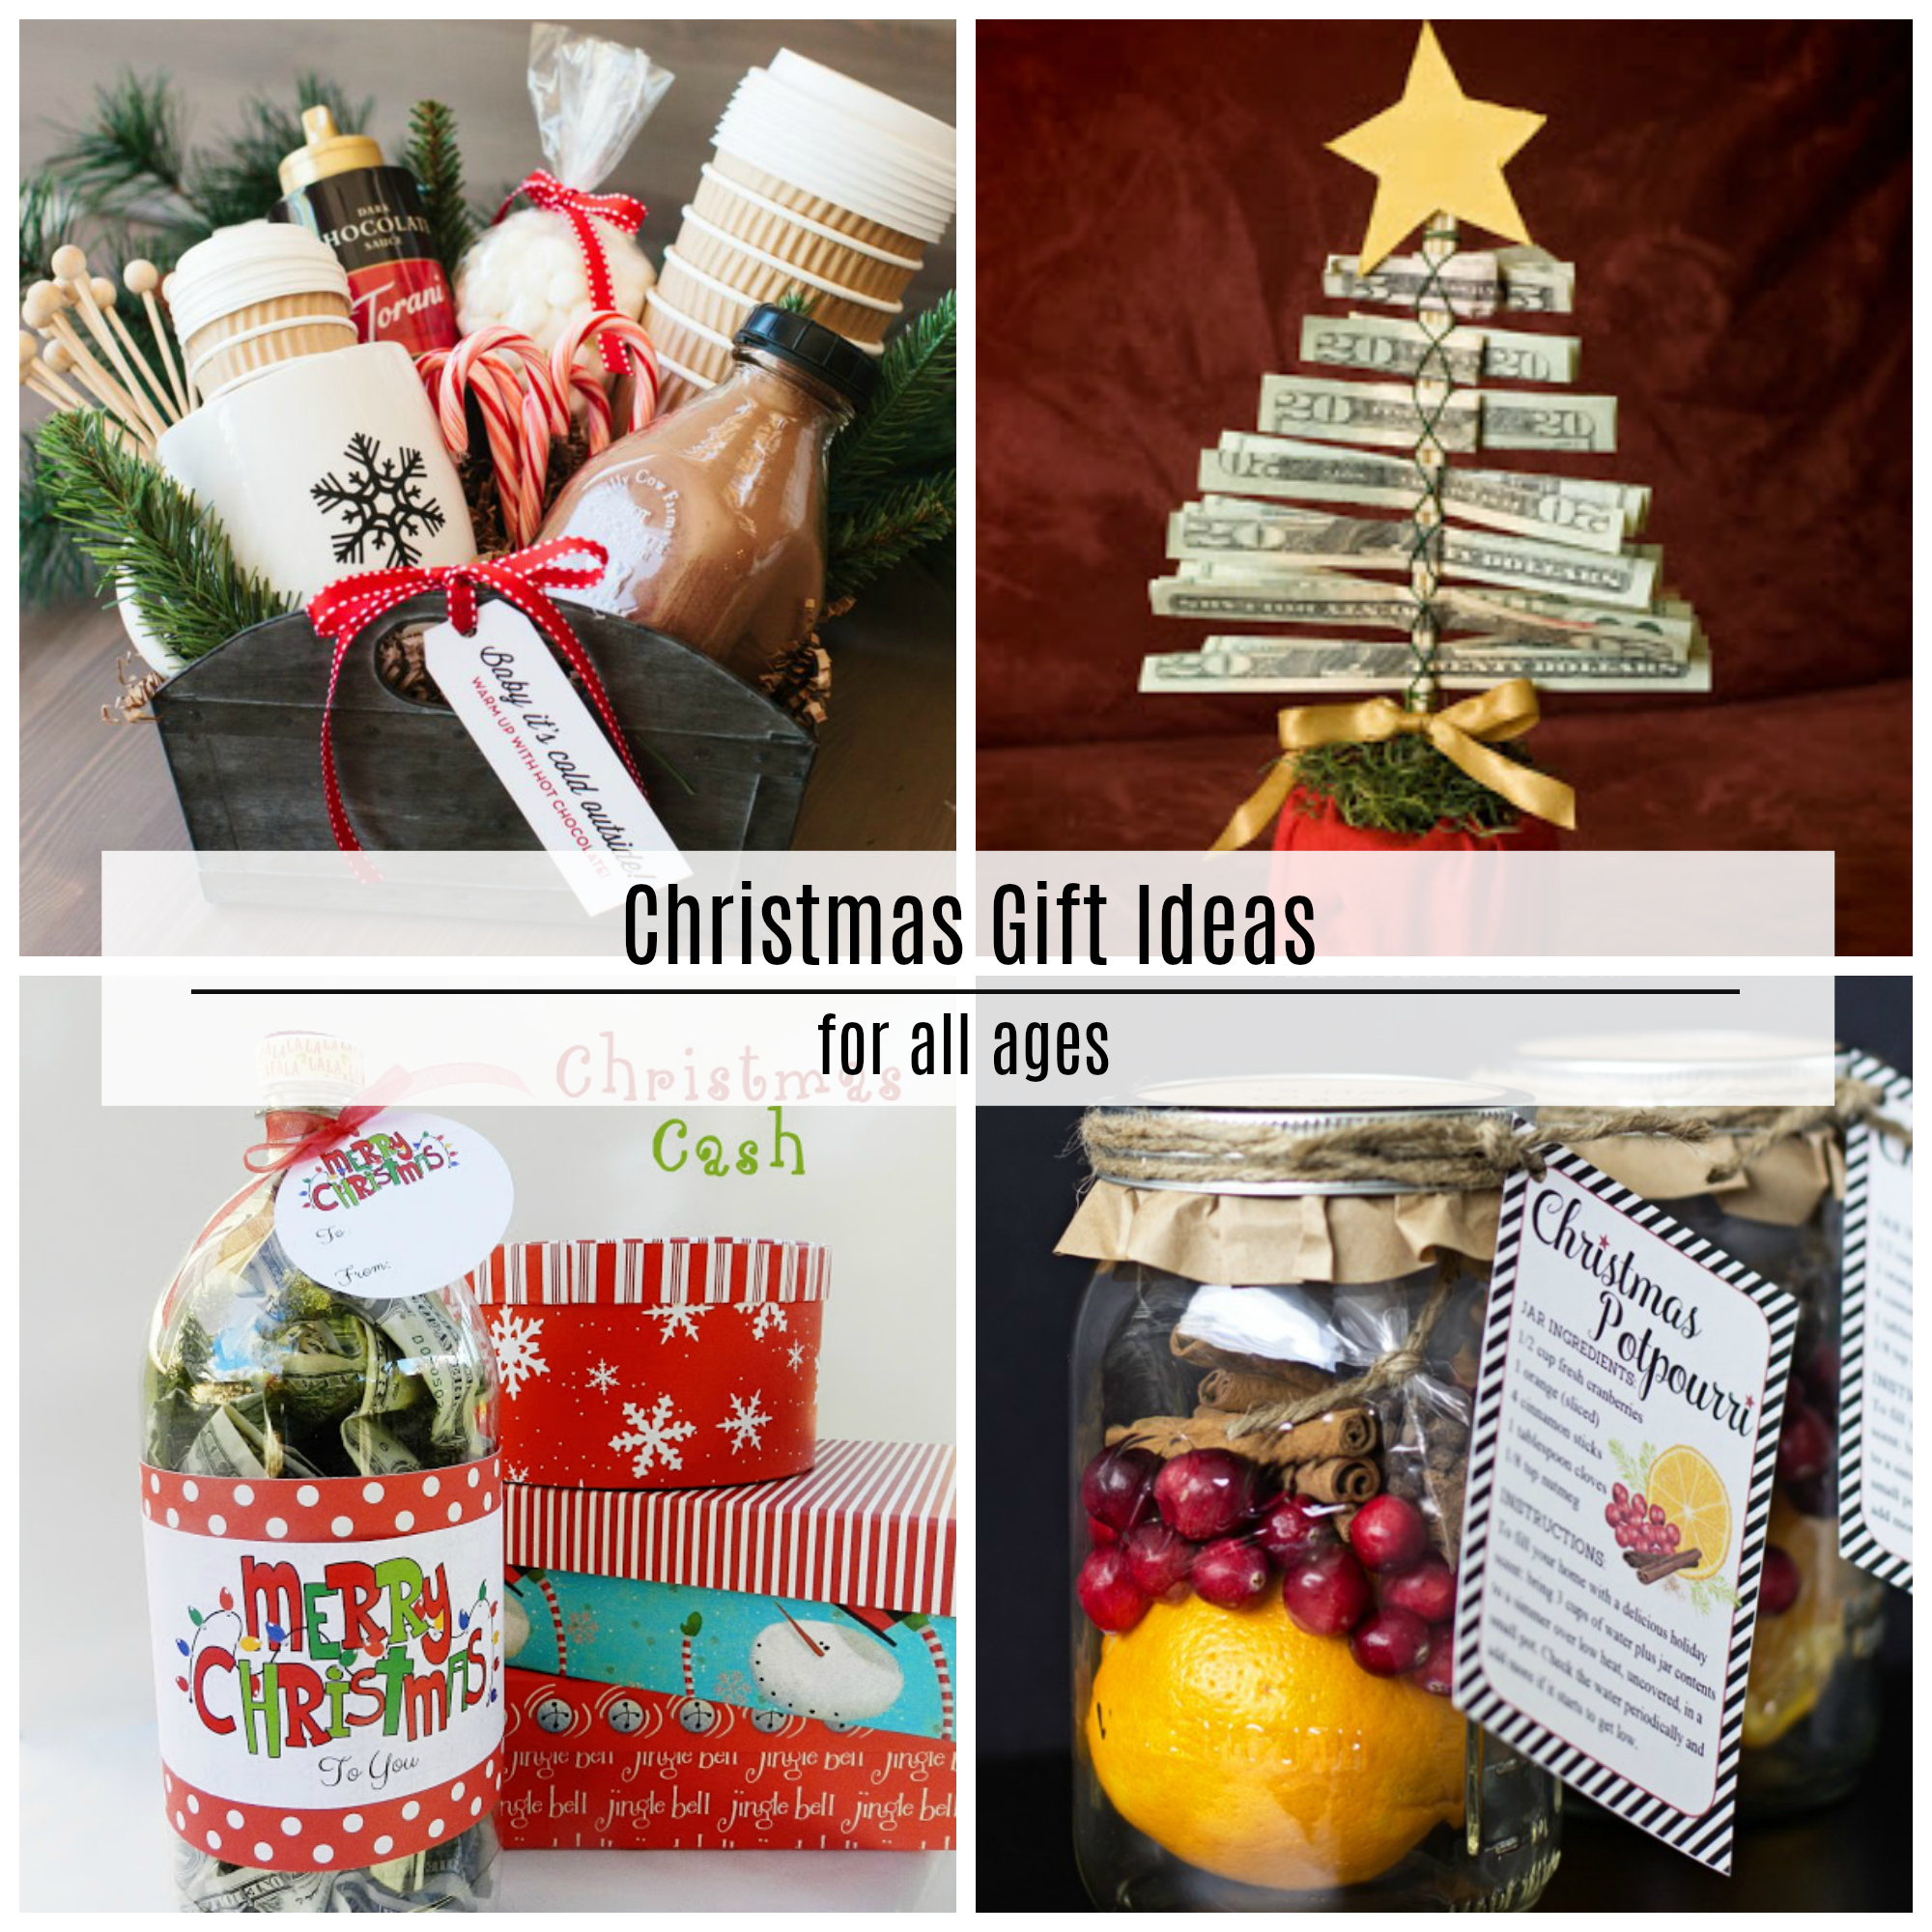 Hot Chocolate Christmas Neighbor Gift Idea - The Polka Dot Chair